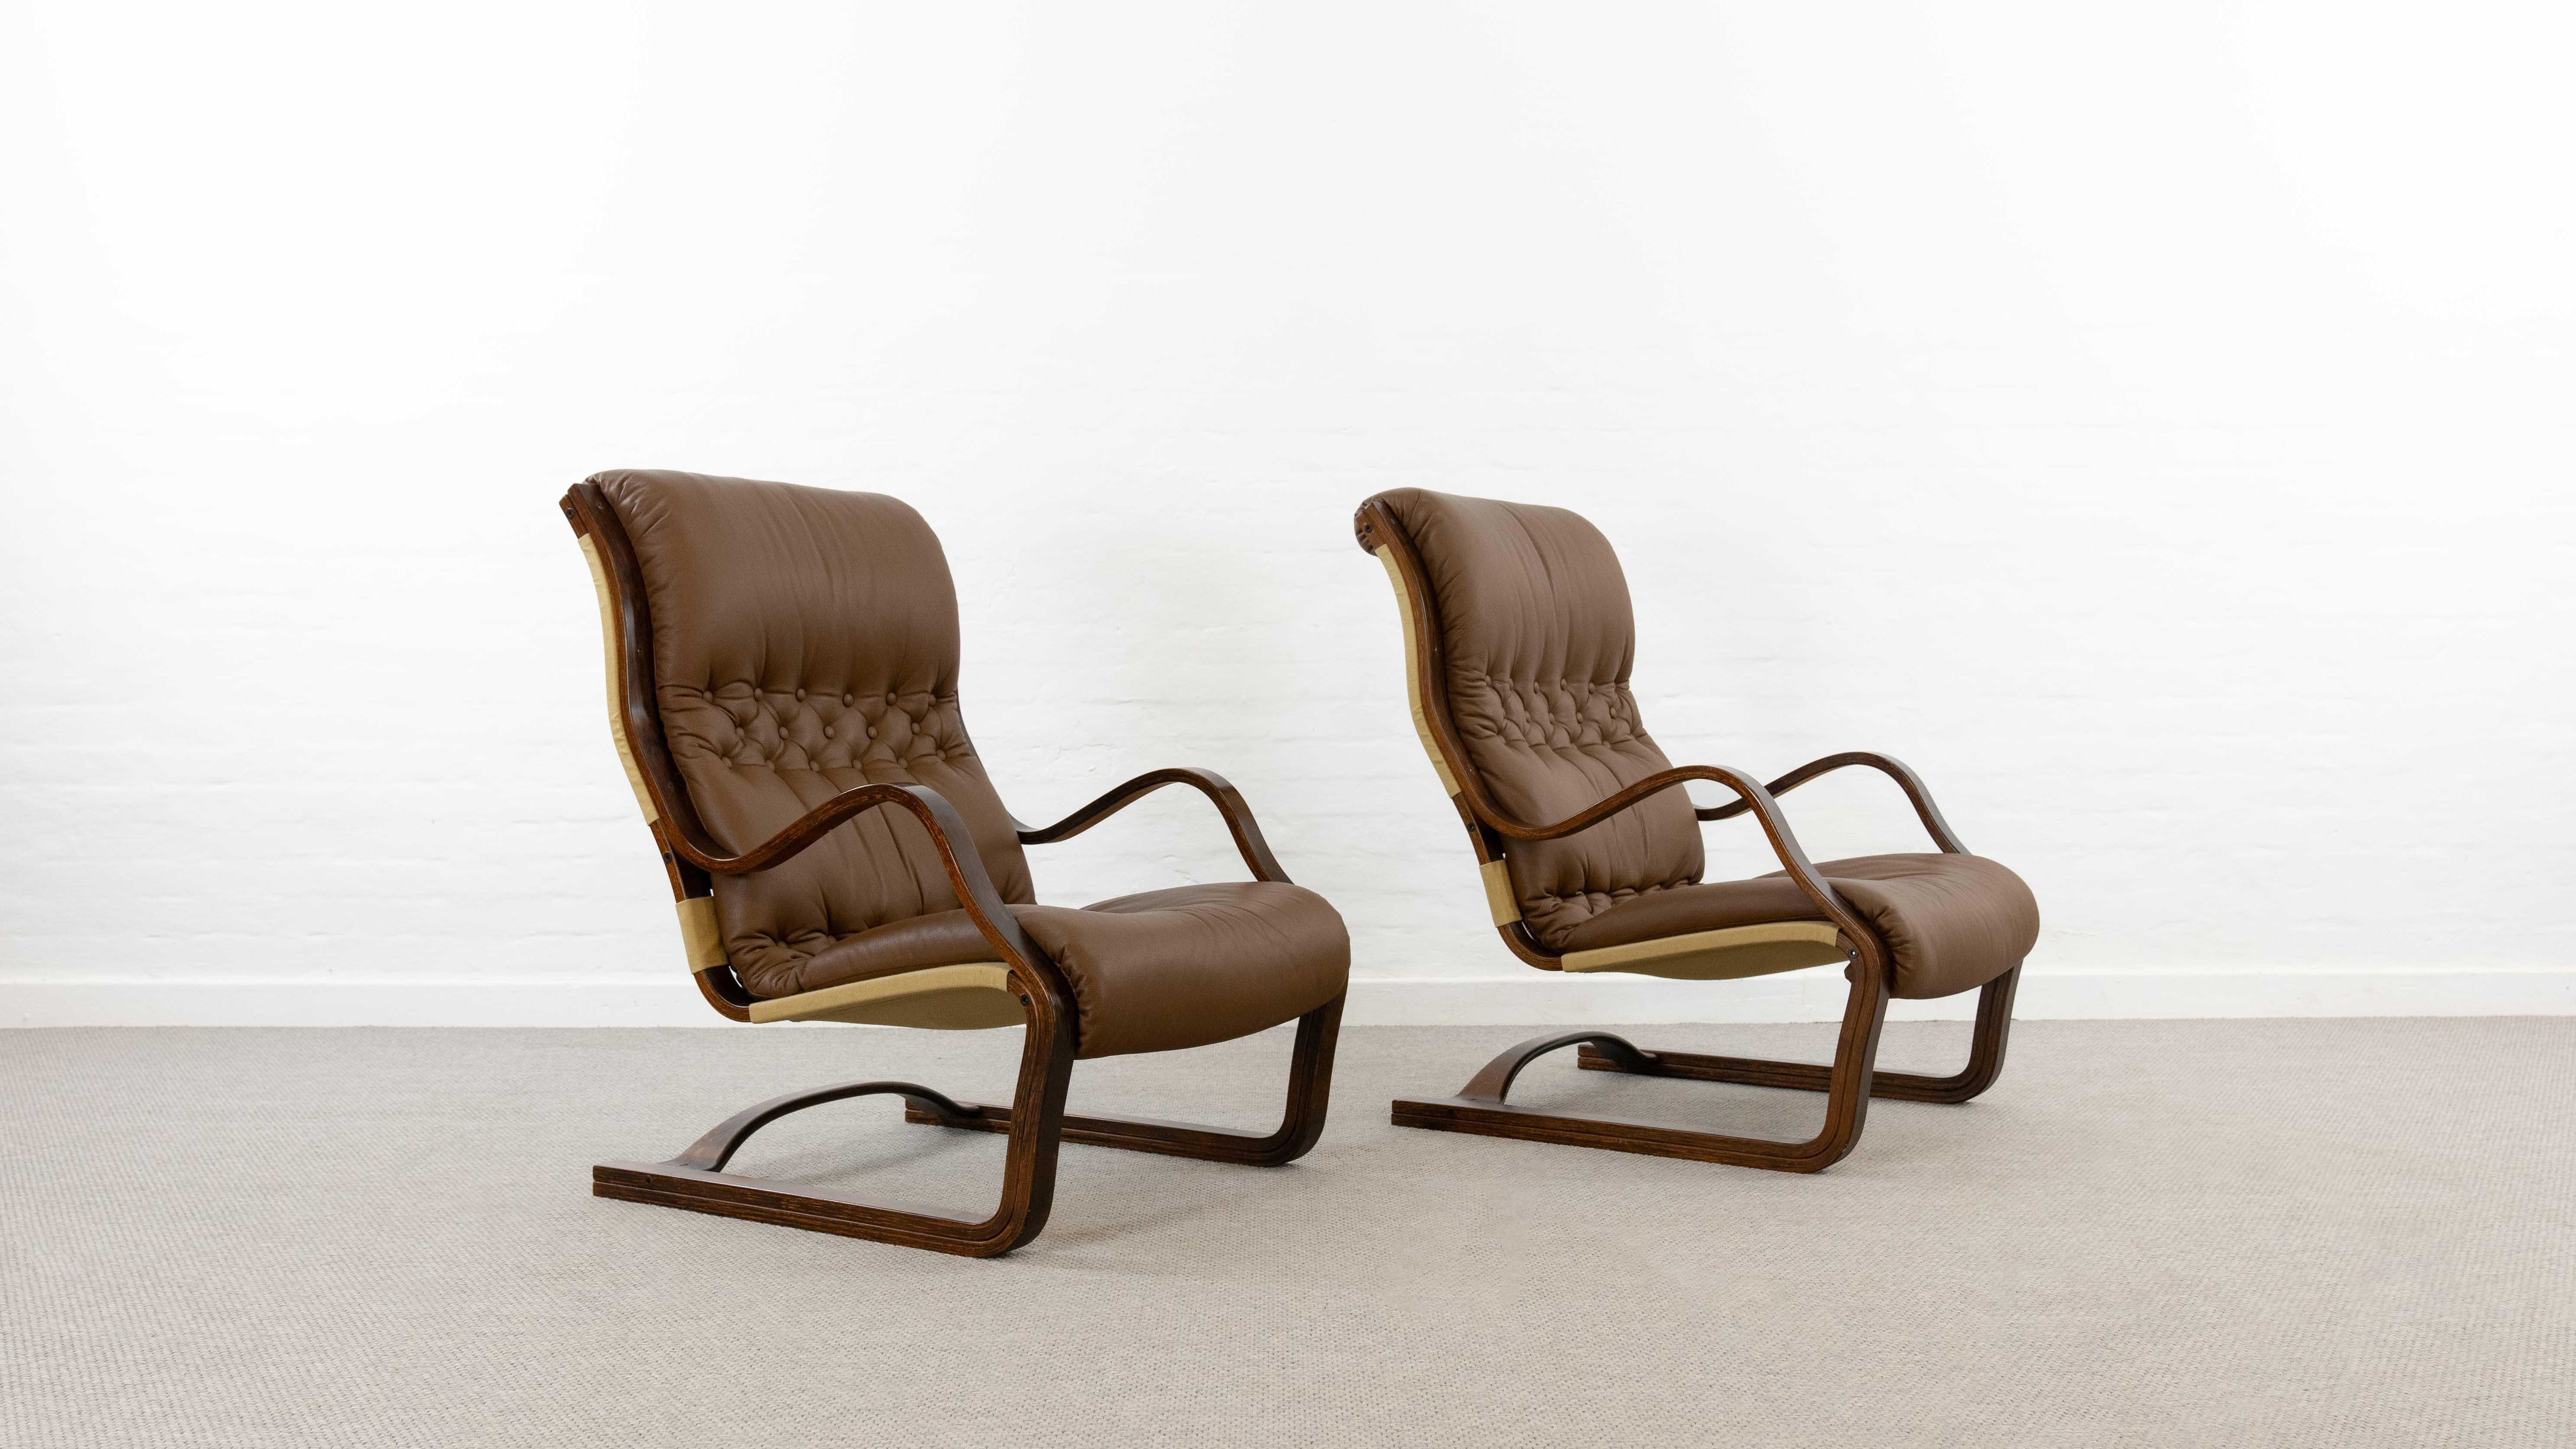 Ensemble de 2 fauteuils Koivutaru à suspension libre. Conçu en 1977 par Esko Pajamies pour Asko, Finlande. Rembourré dans son cuir boutonné marron d'origine. La chaise de cheminée idéale. Très belle formation en bois courbé des accoudoirs et du